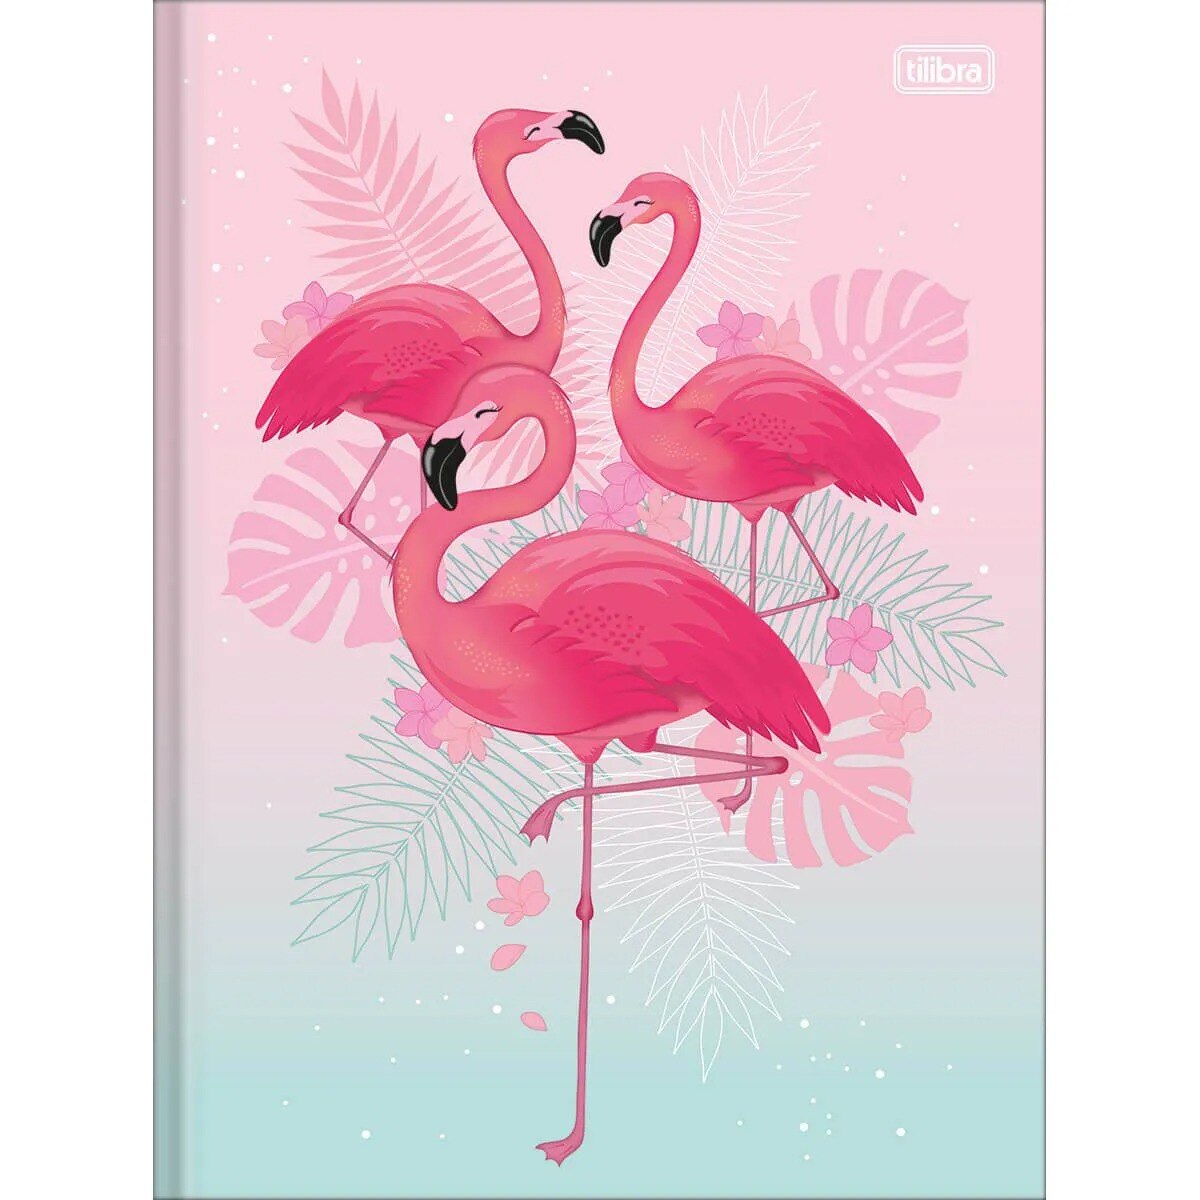 Caderno Tilibra Capa Dura Costurado Universitário 80 Fls Flamingo Aloha